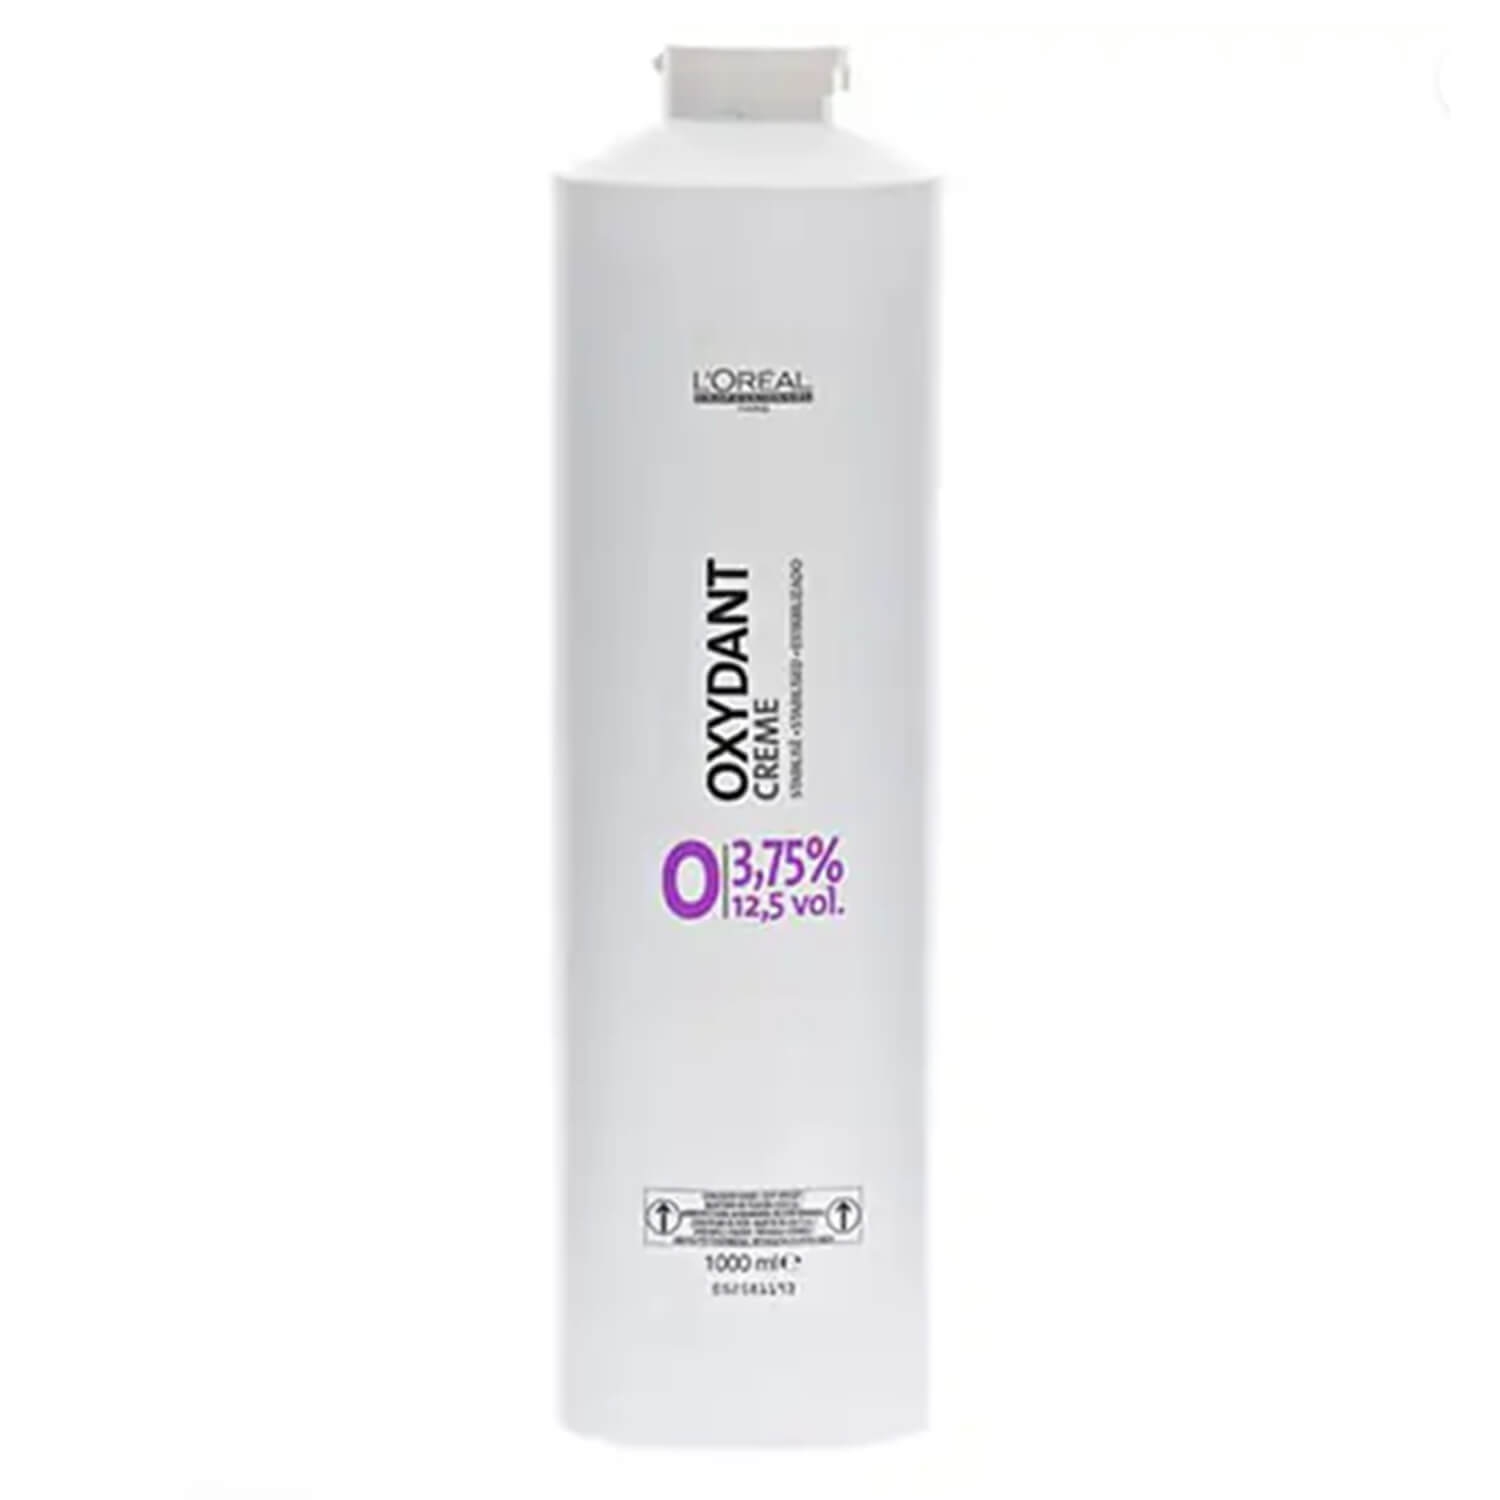 Produktbild von L'Oréal Oxydant - Crème 3.75% 12.5vol.